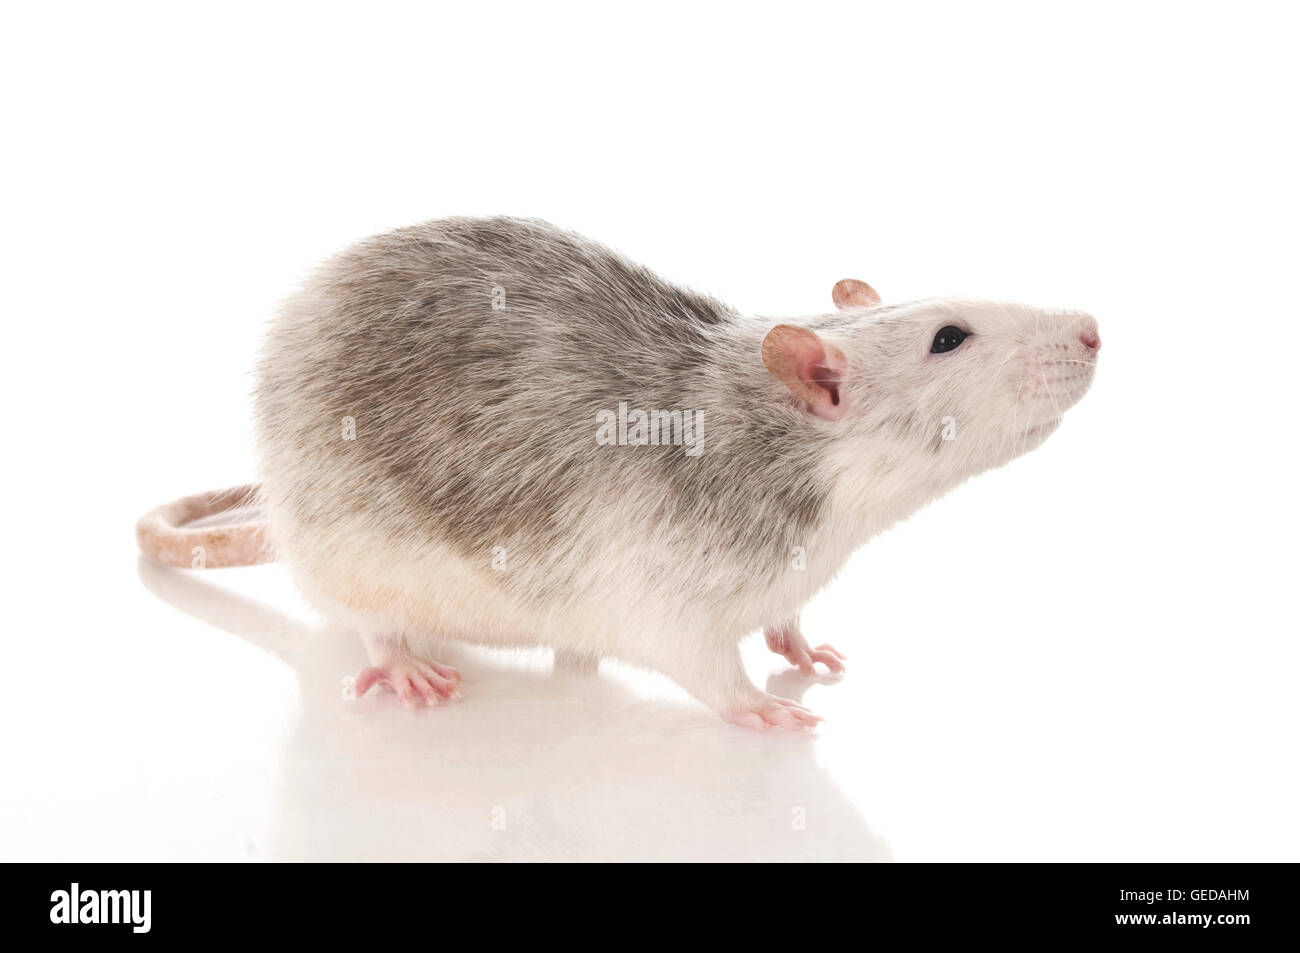 Ausgefallene Ratte, Haustier Ratte. Erwachsenen gesehen seitlich. Studio  Bild vor einem weißen Hintergrund Stockfotografie - Alamy